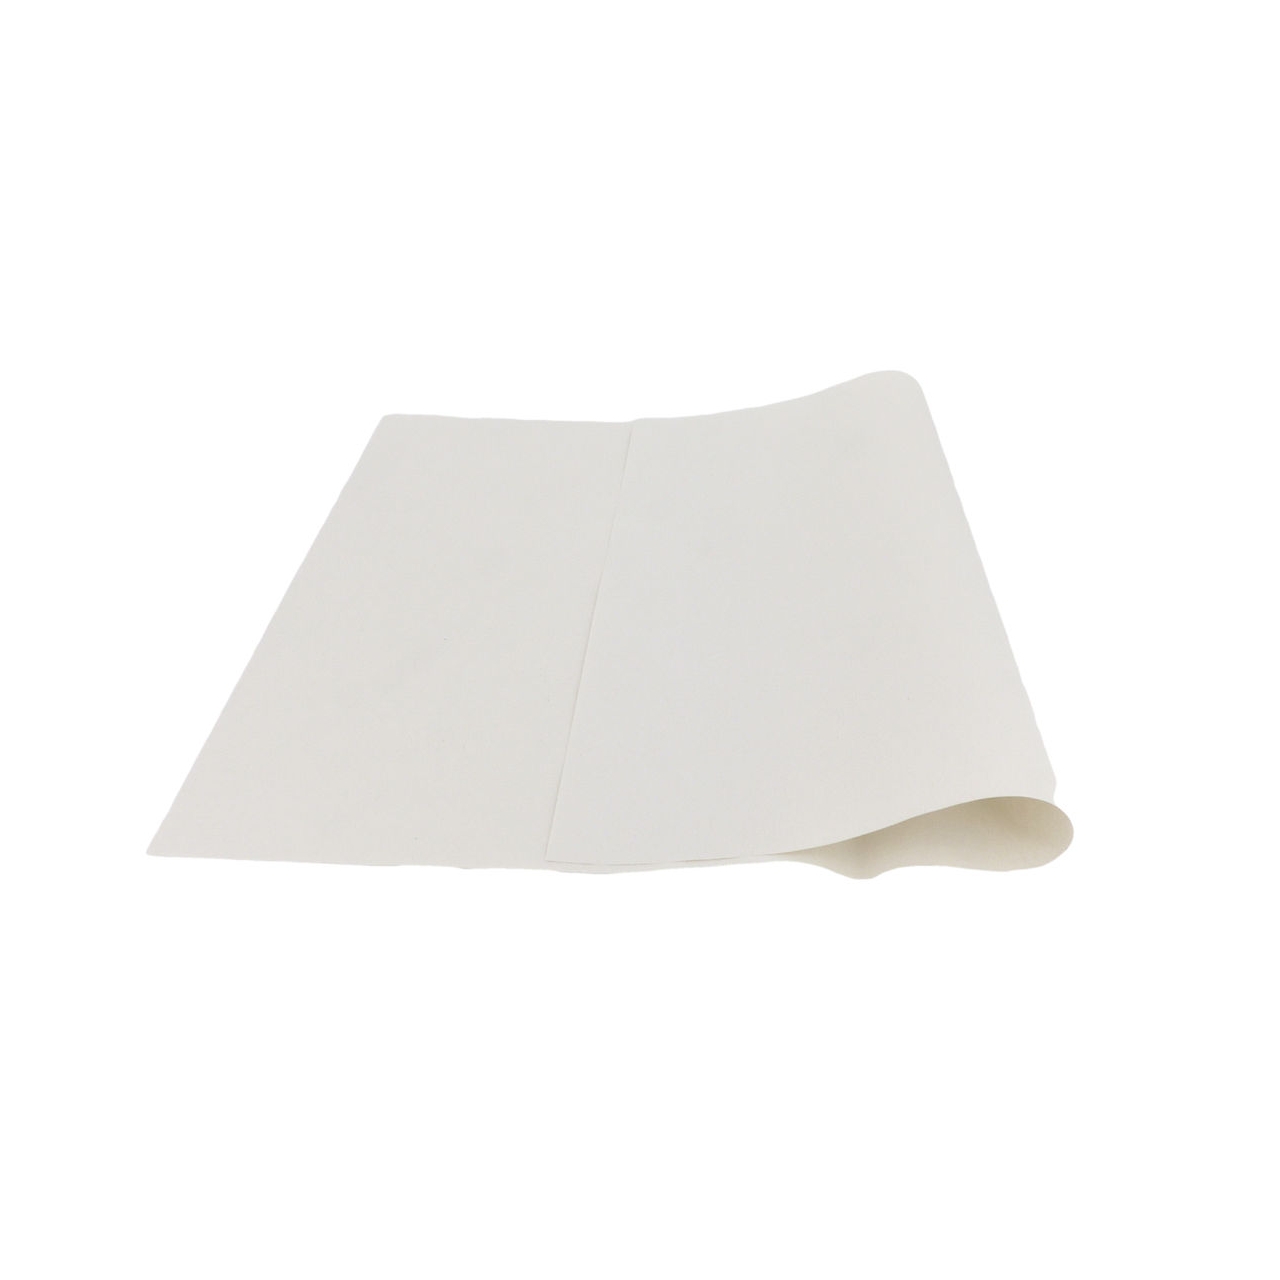 Einschlagpapier 1/8 Bg. 37.5 x 25 cm, weiß, 40 g/qm, 10 kg Pack